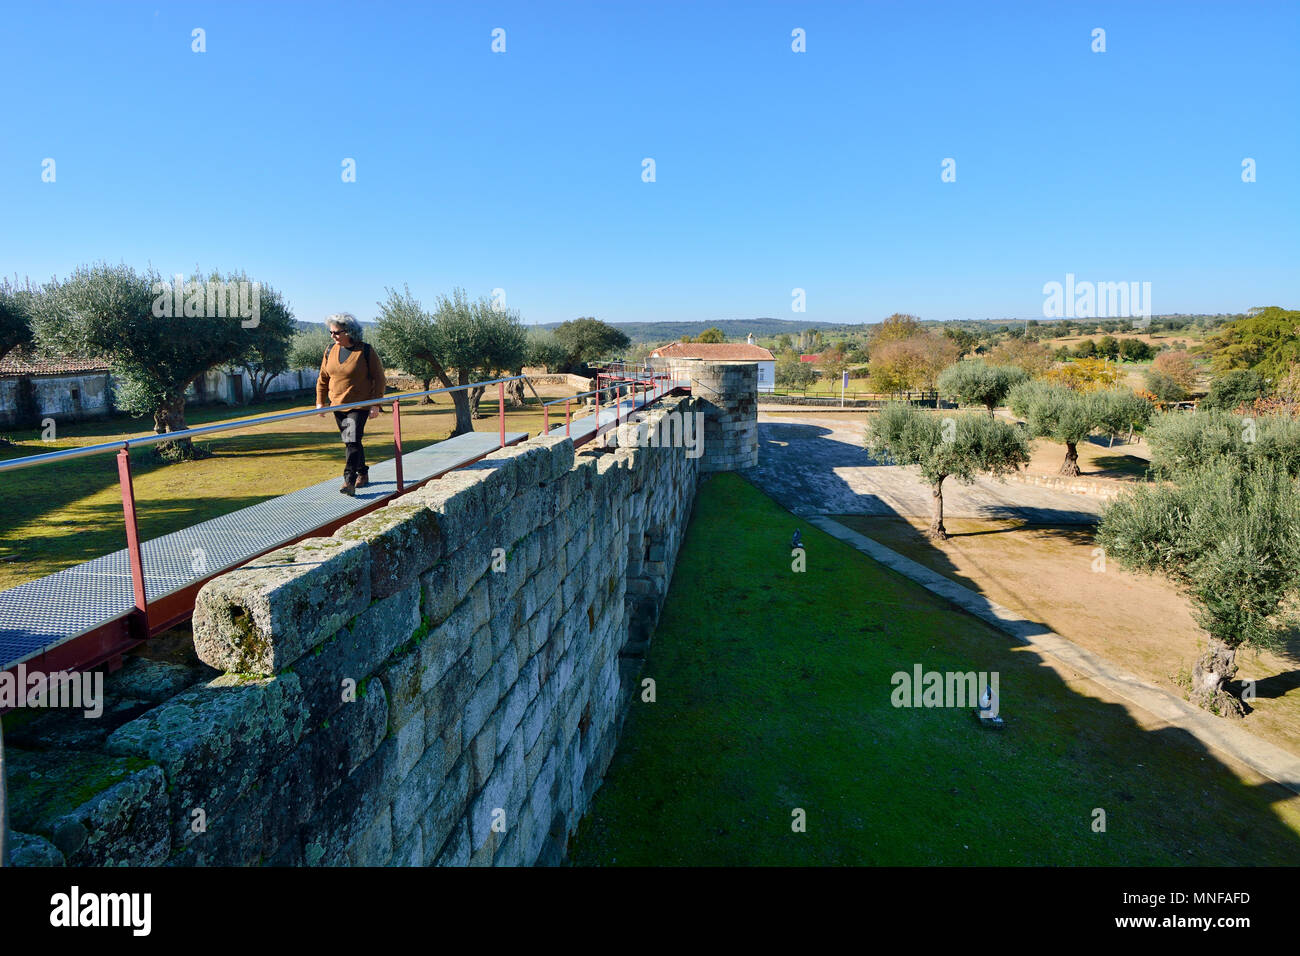 Le mura romane e medievali del villaggio storico di Idanha a Velha. Portogallo Foto Stock